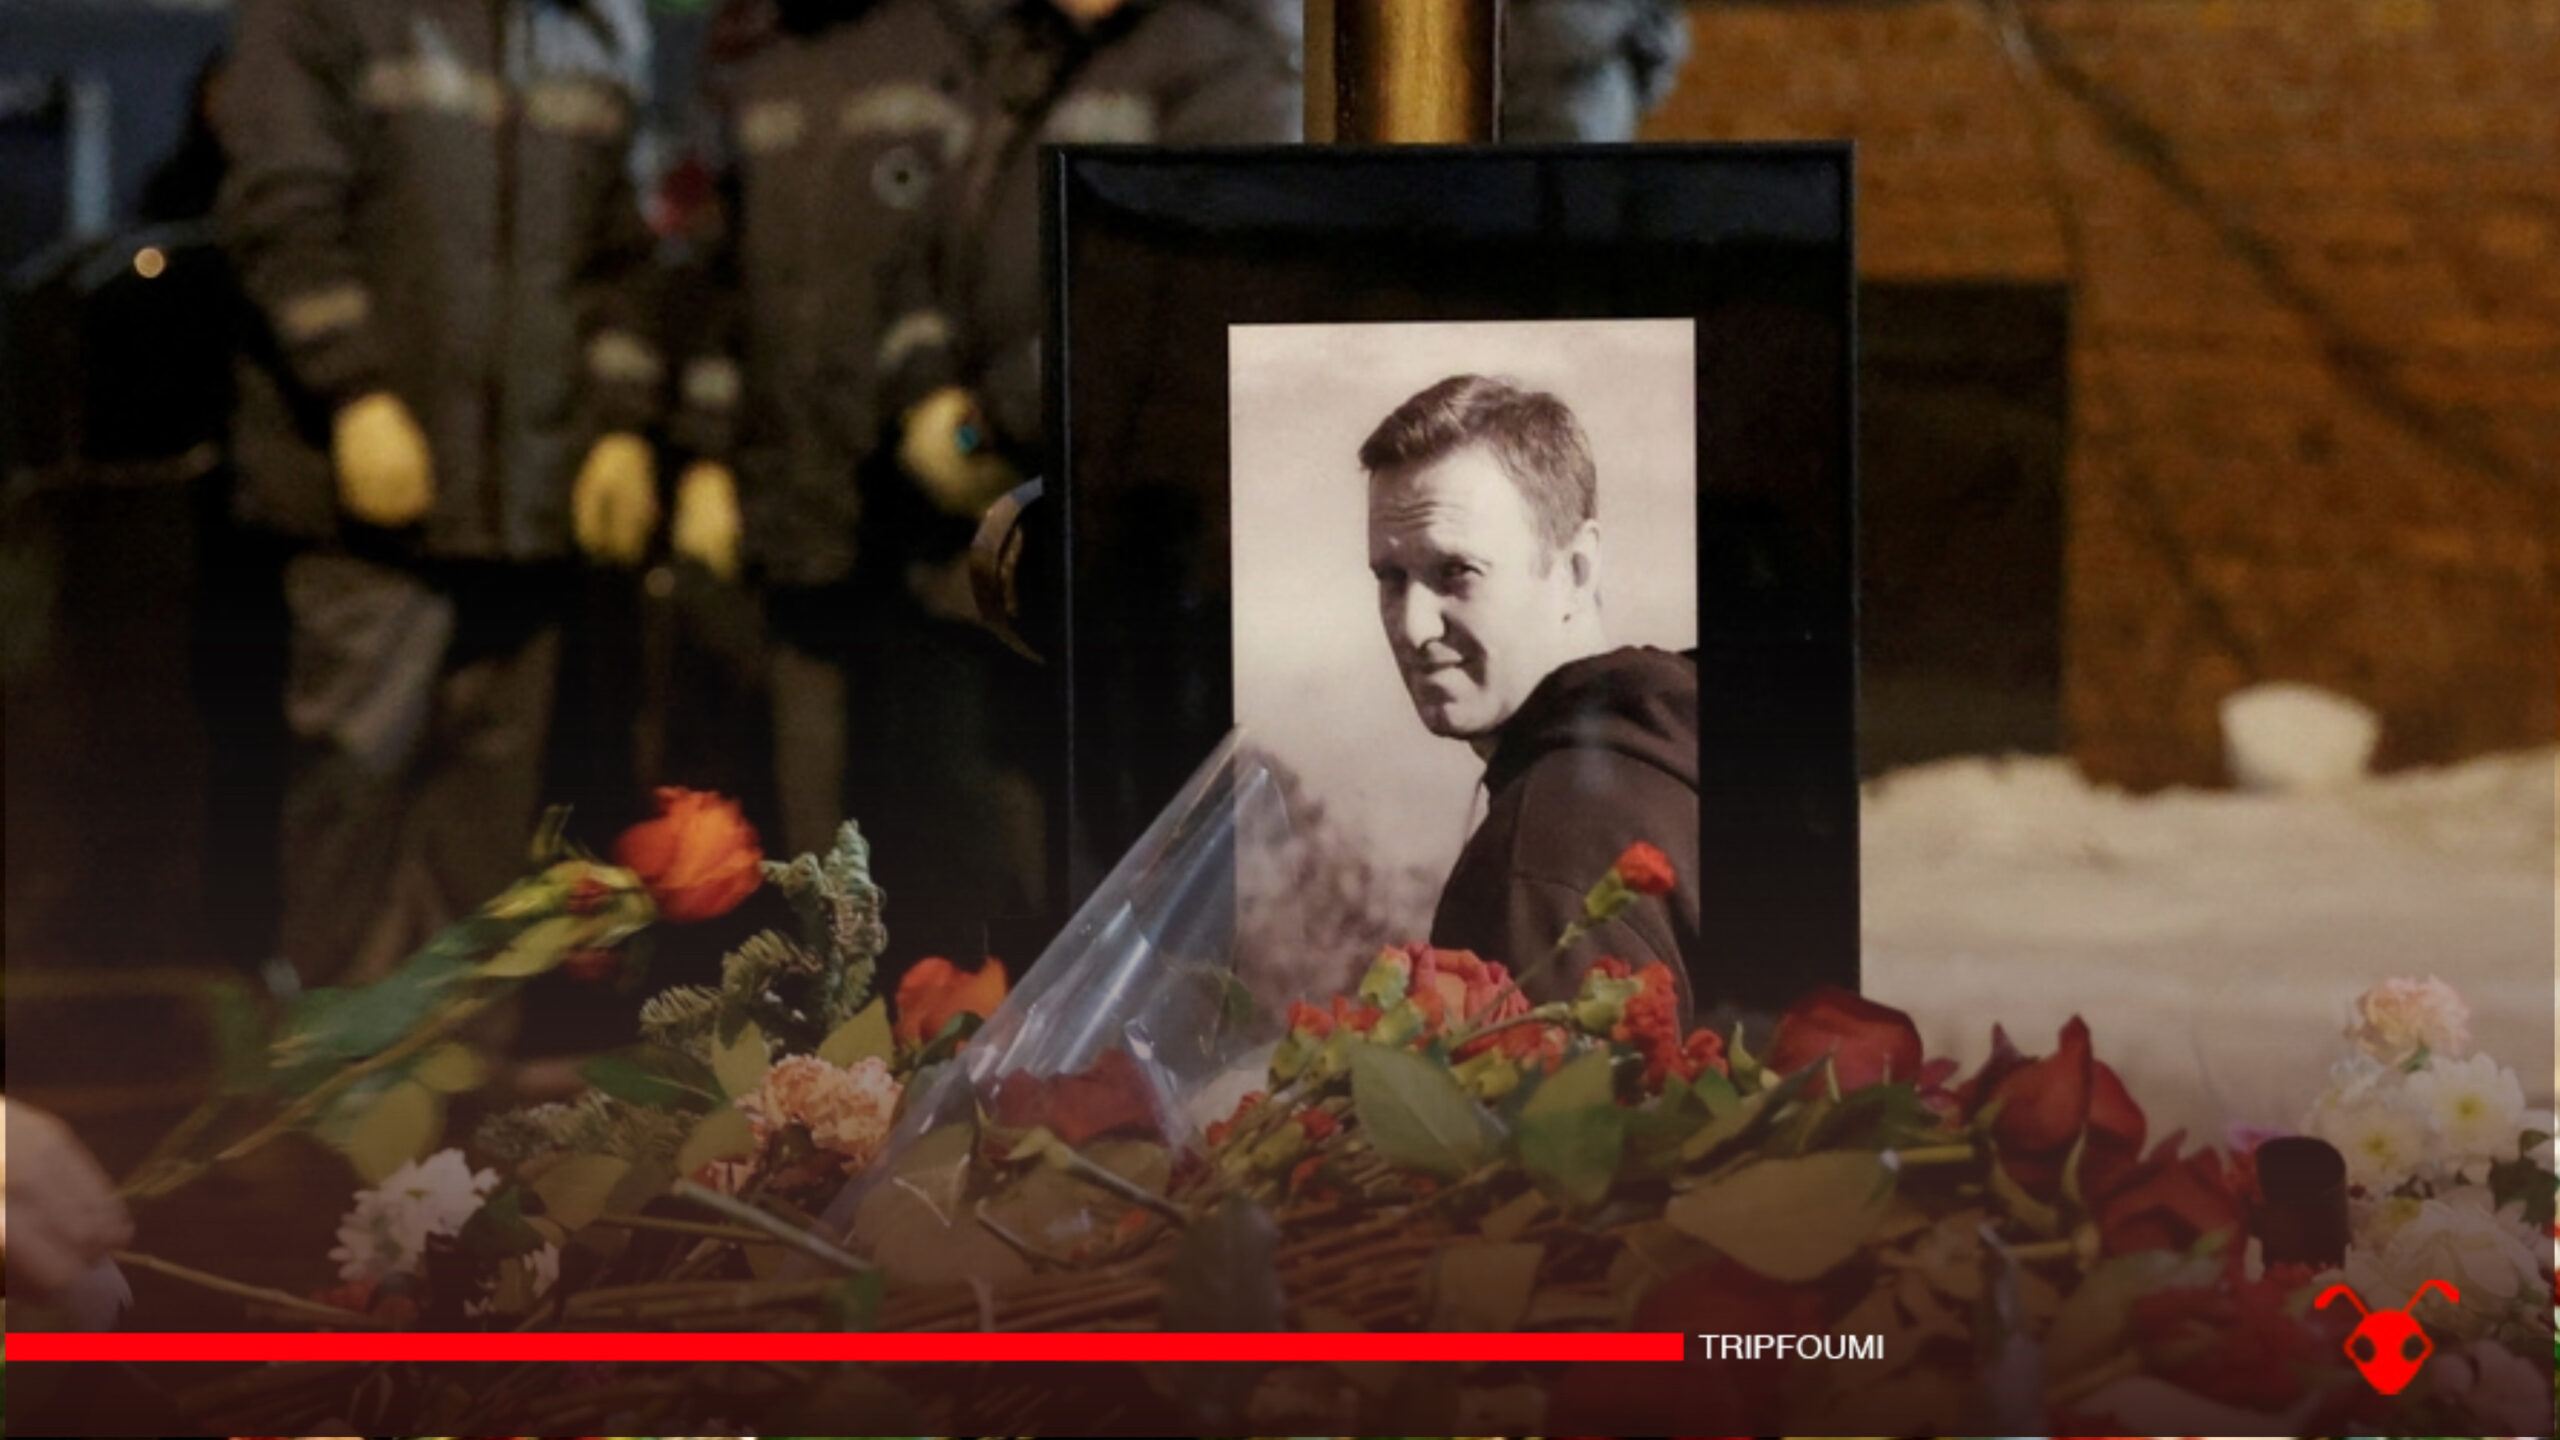 Vladimir Poutine n'aurait pas directement ordonné la mort de Navalny, selon la CIA